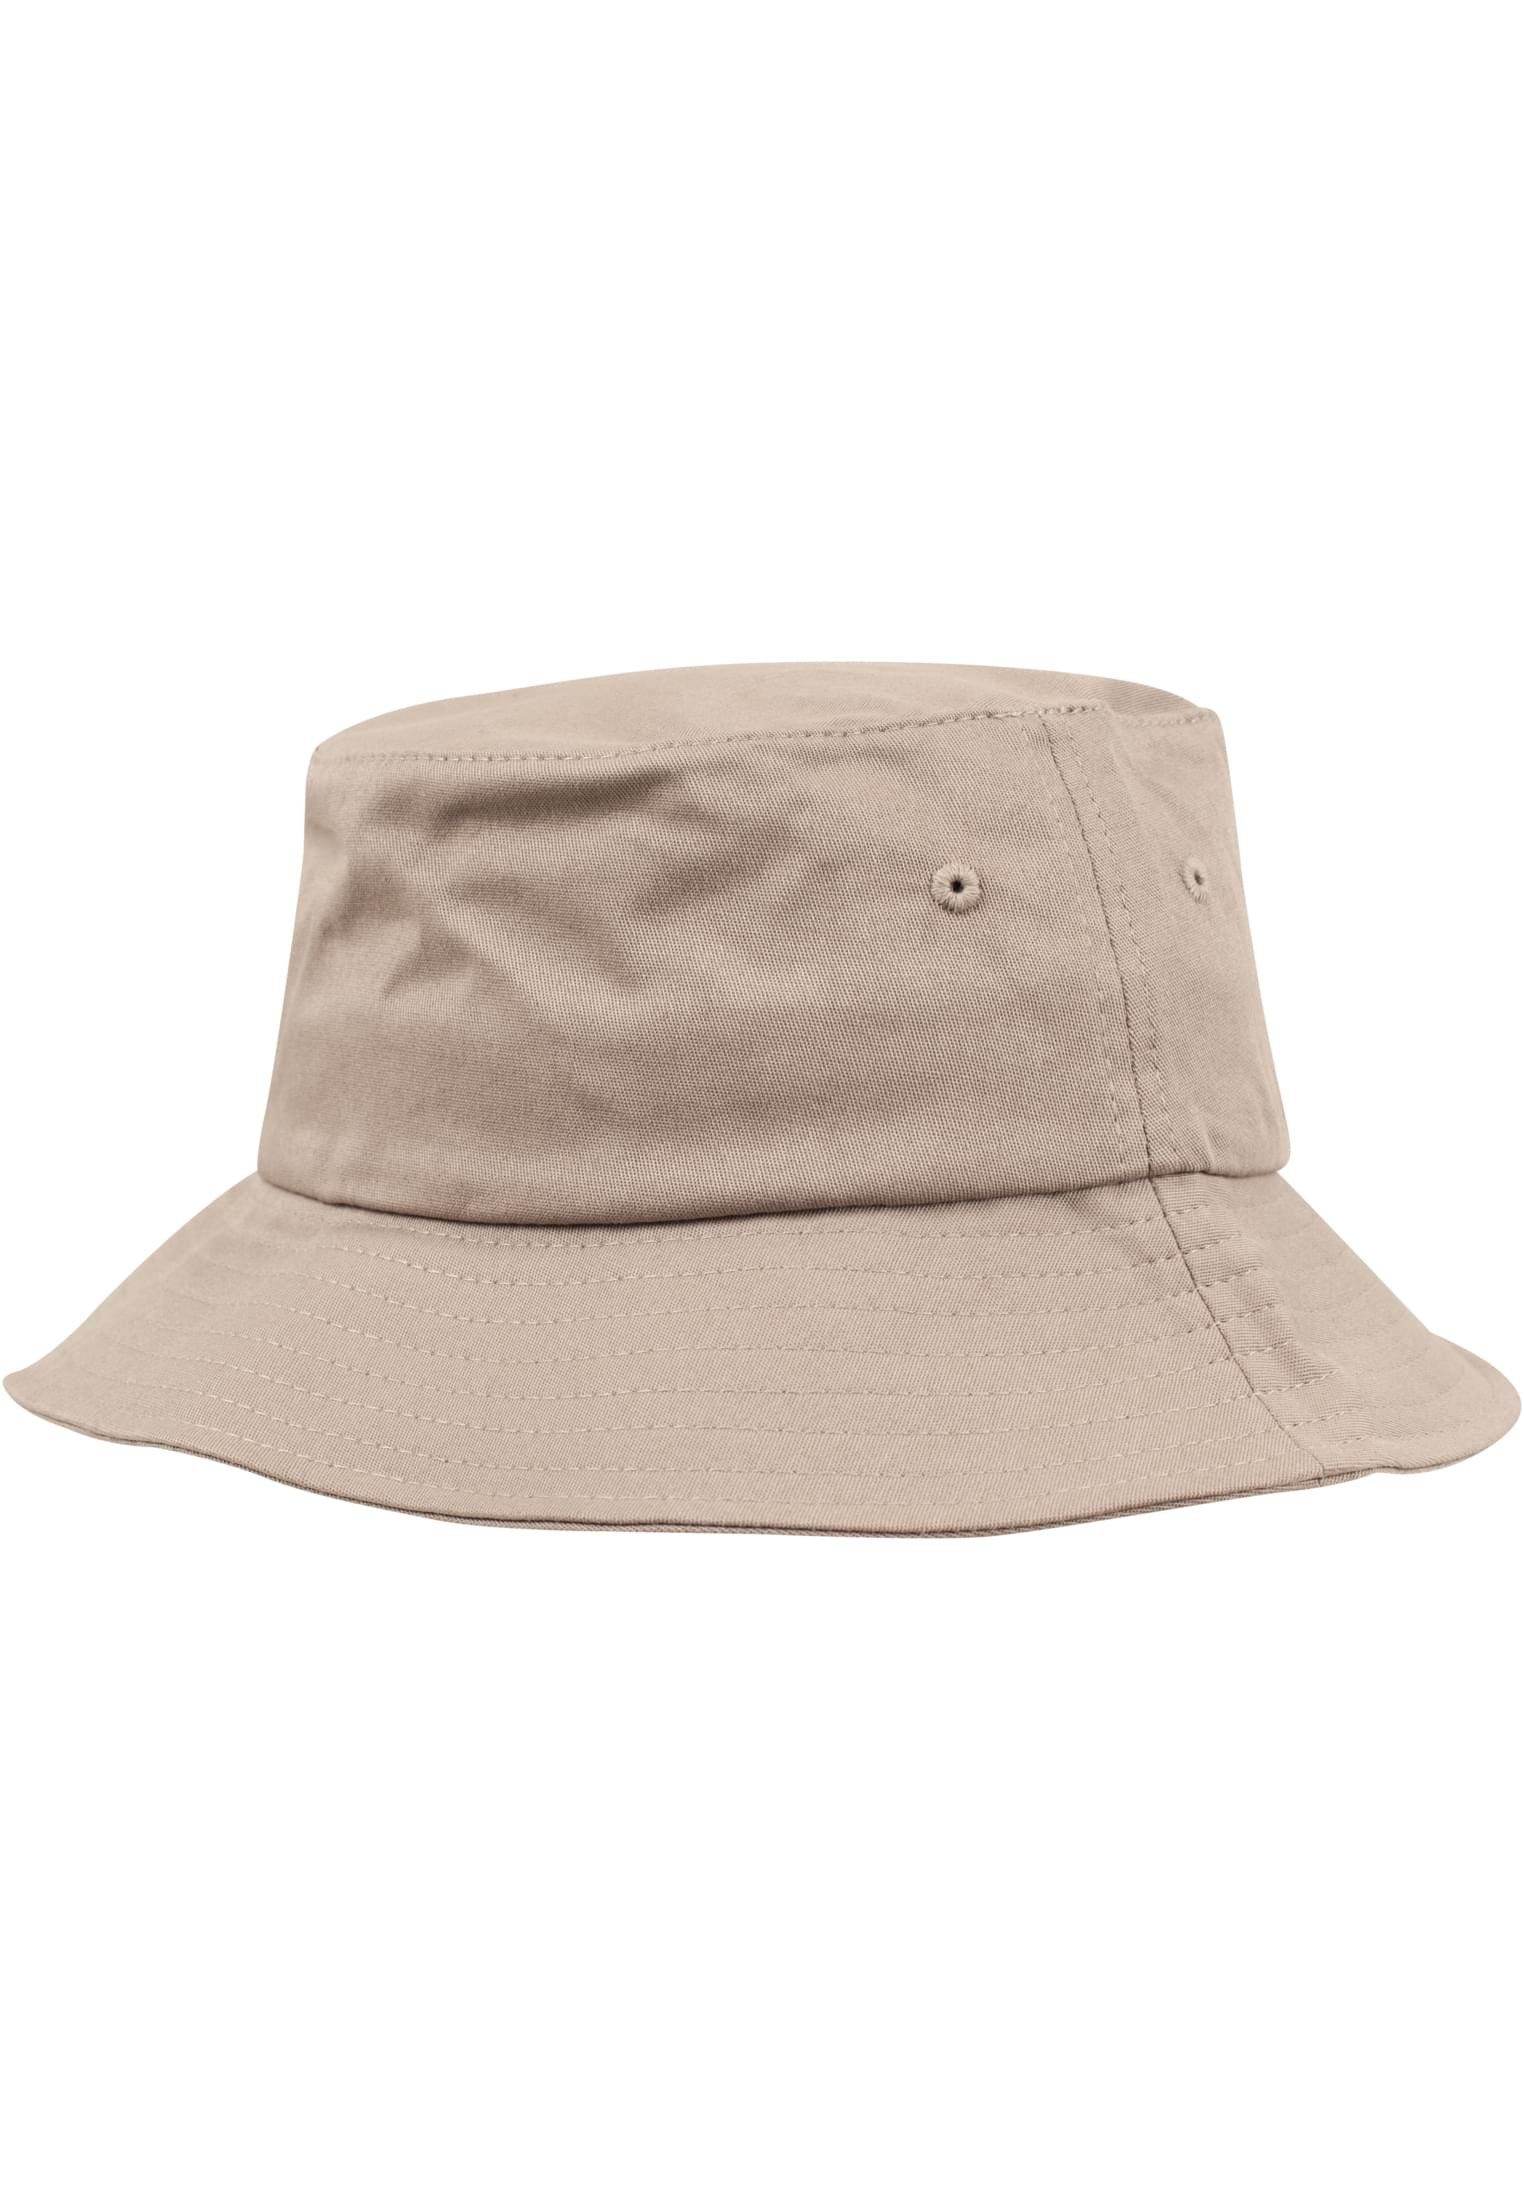 Accessoires Cap Hat Bucket Flexfit Cotton Twill khaki Flex Flexfit